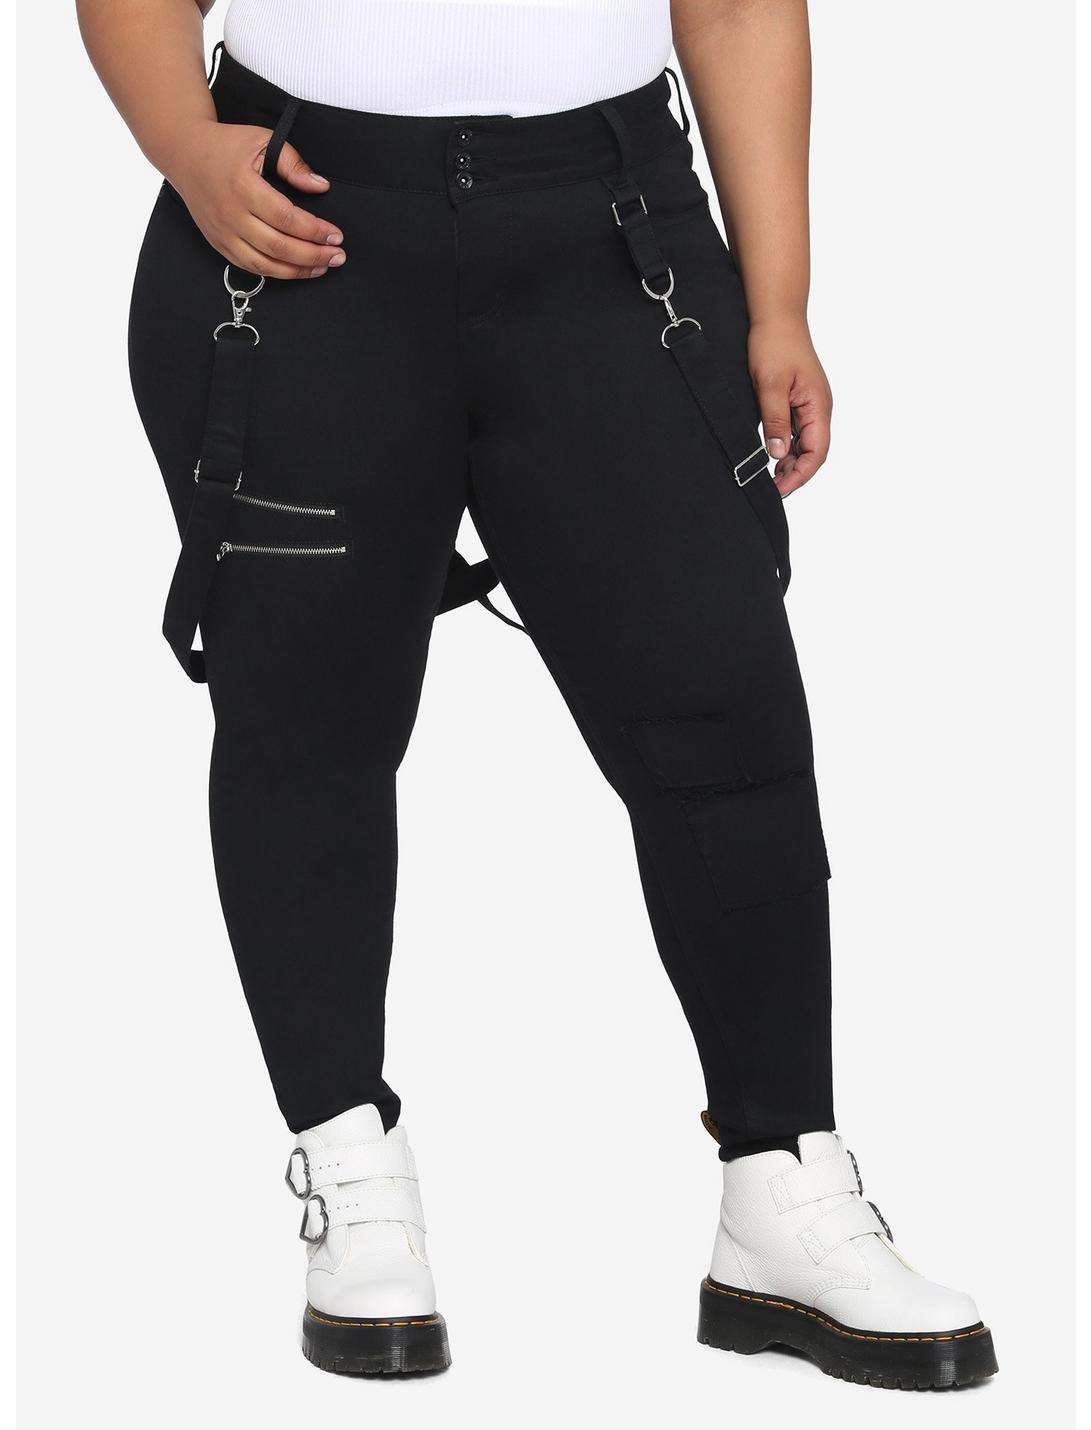 HT Denim Black Suspender Super Skinny Jeans Plus Size, BLACK, hi-res